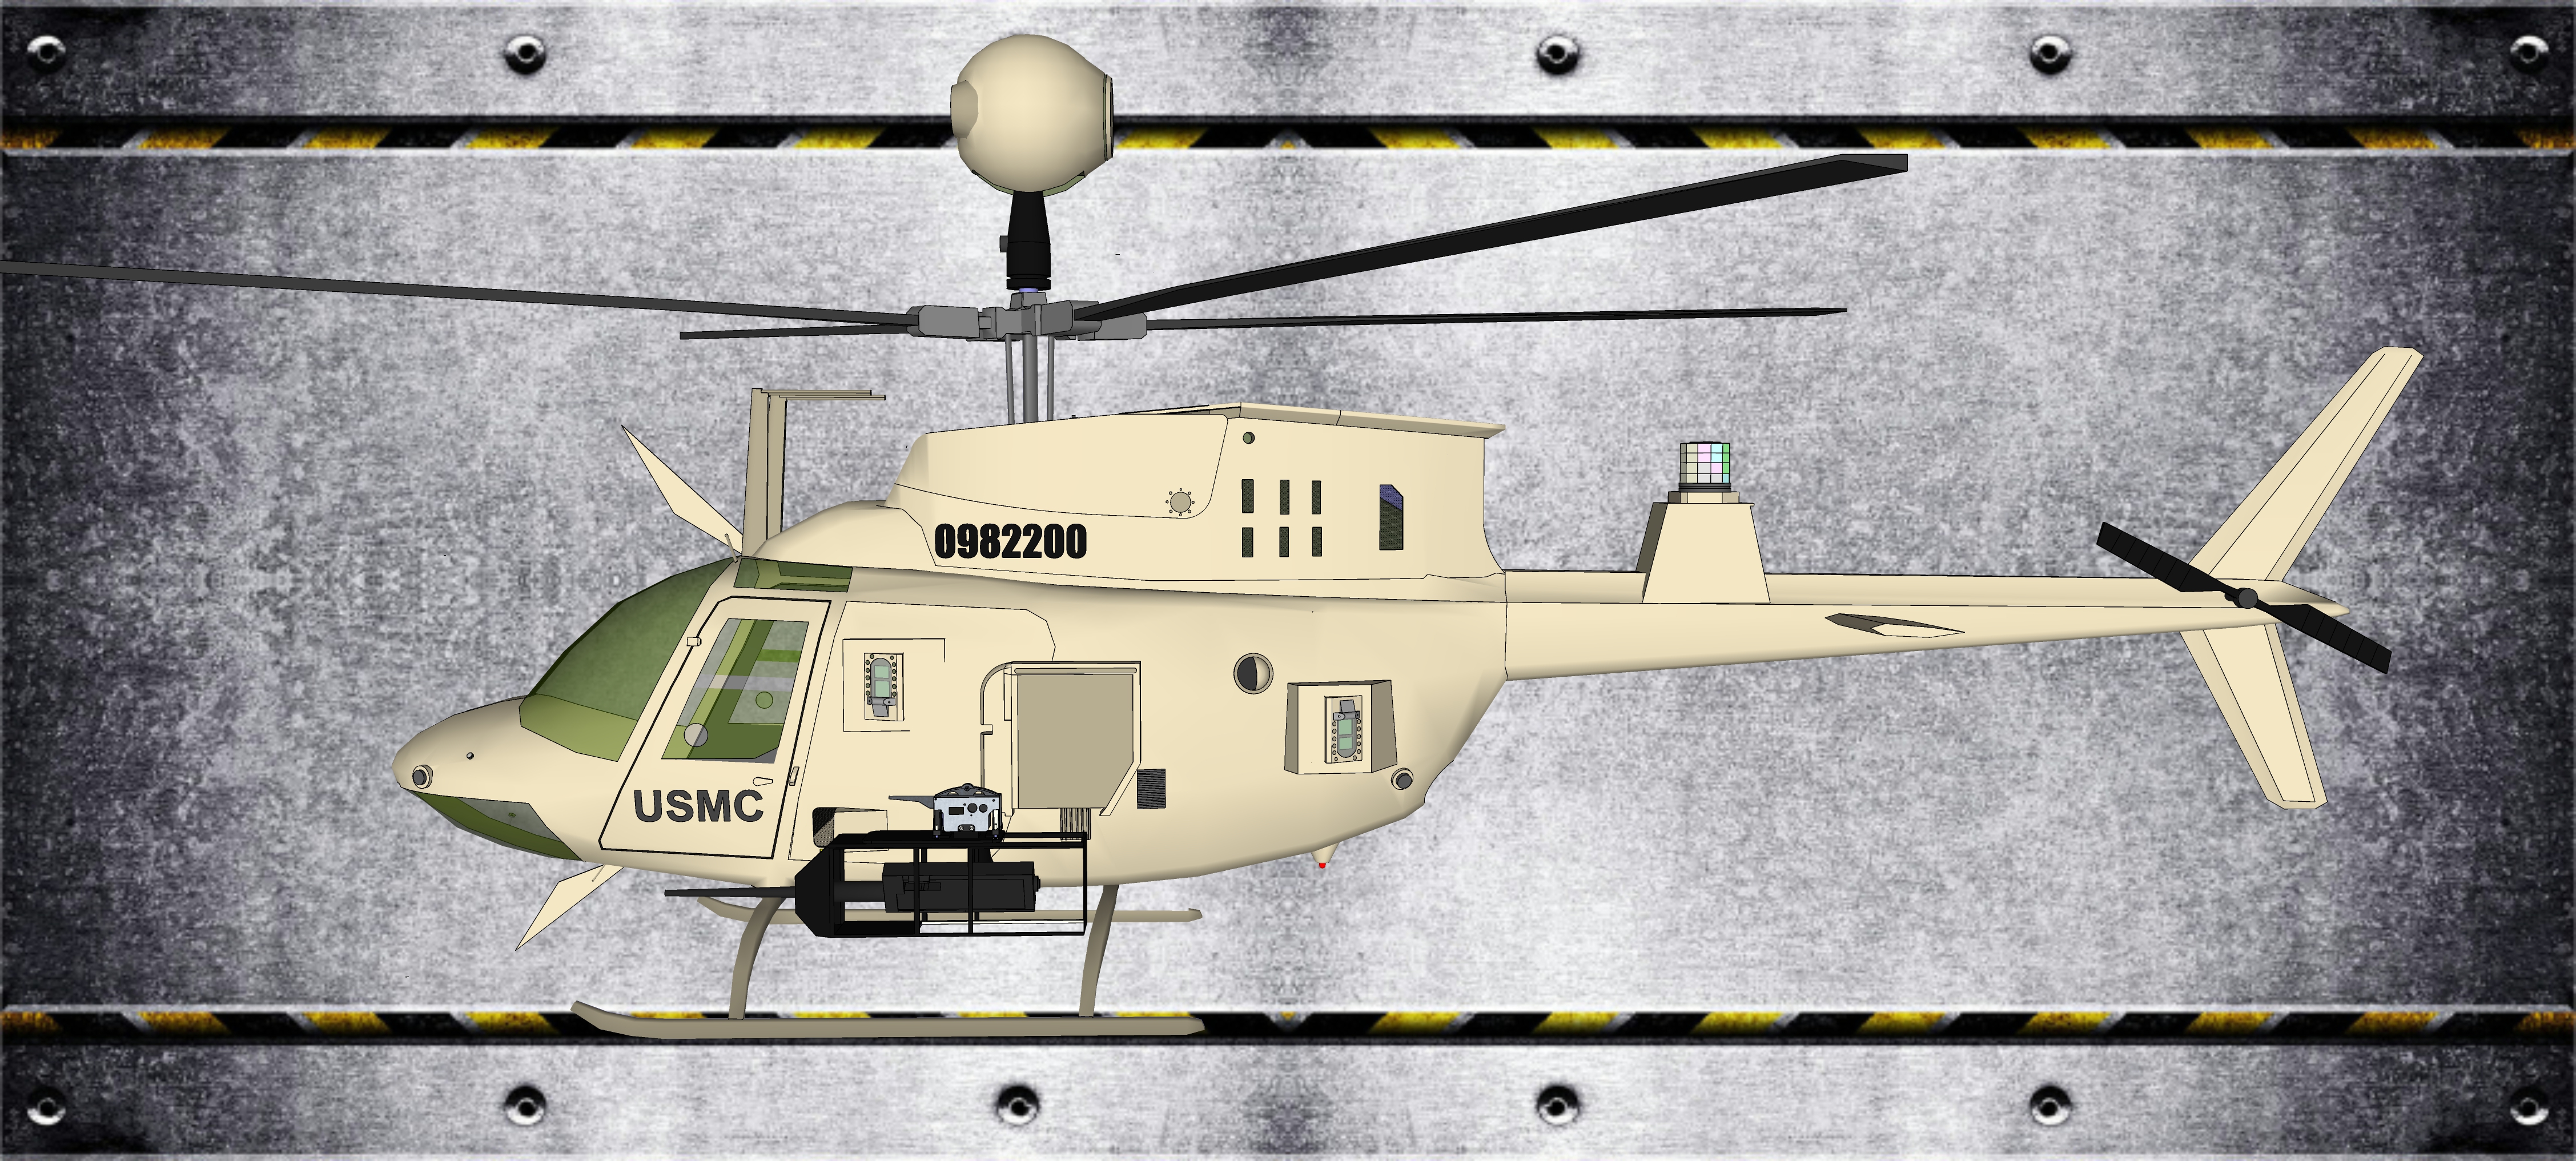 武装直升机 侧面图图片